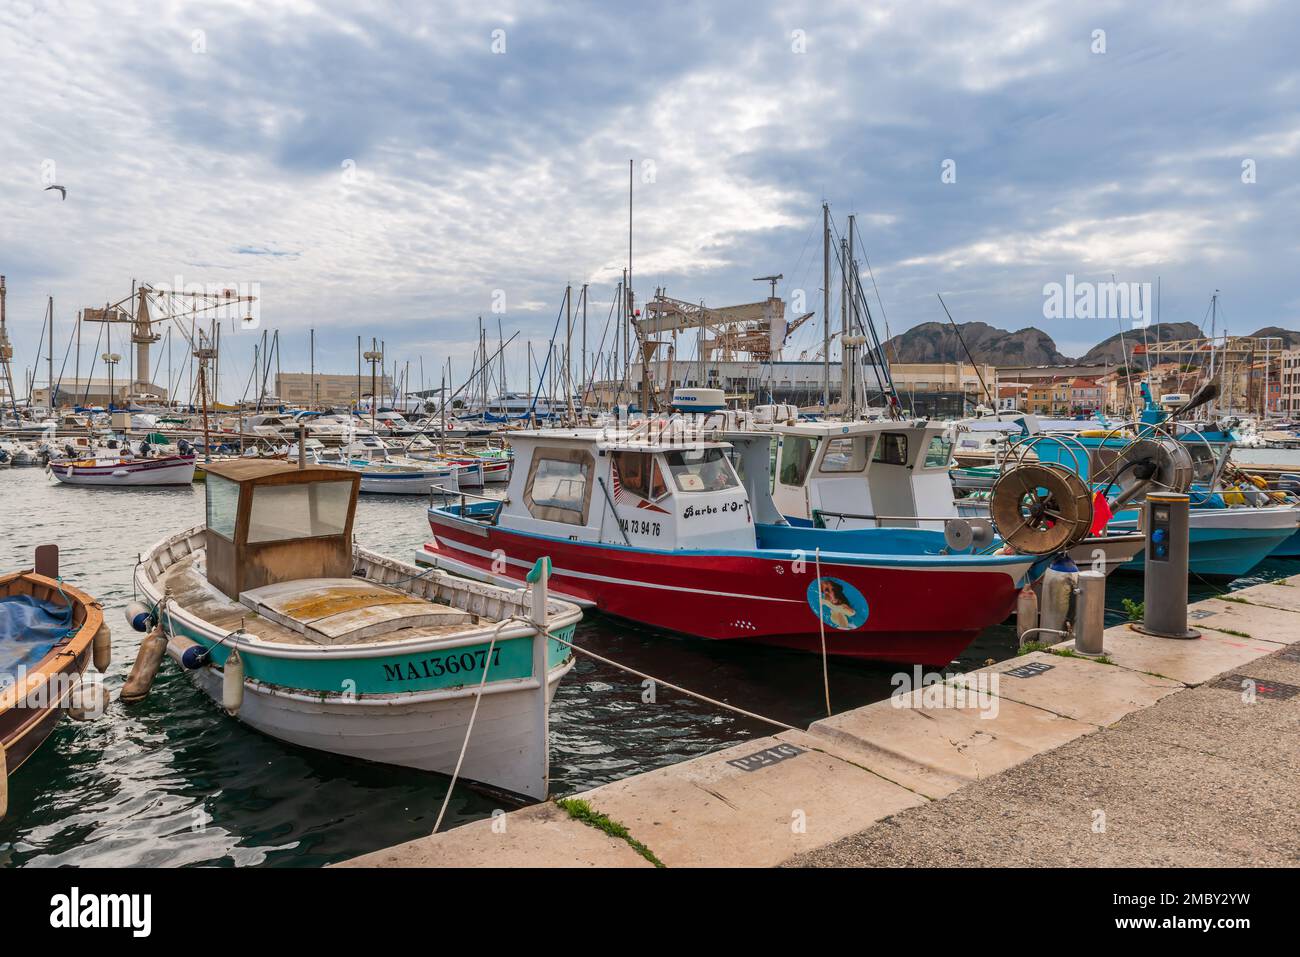 Barche provenzali di fronte alla chiesa nel porto di la Ciotat, nelle Bocche del Rodano, Provenza, Francia Foto Stock